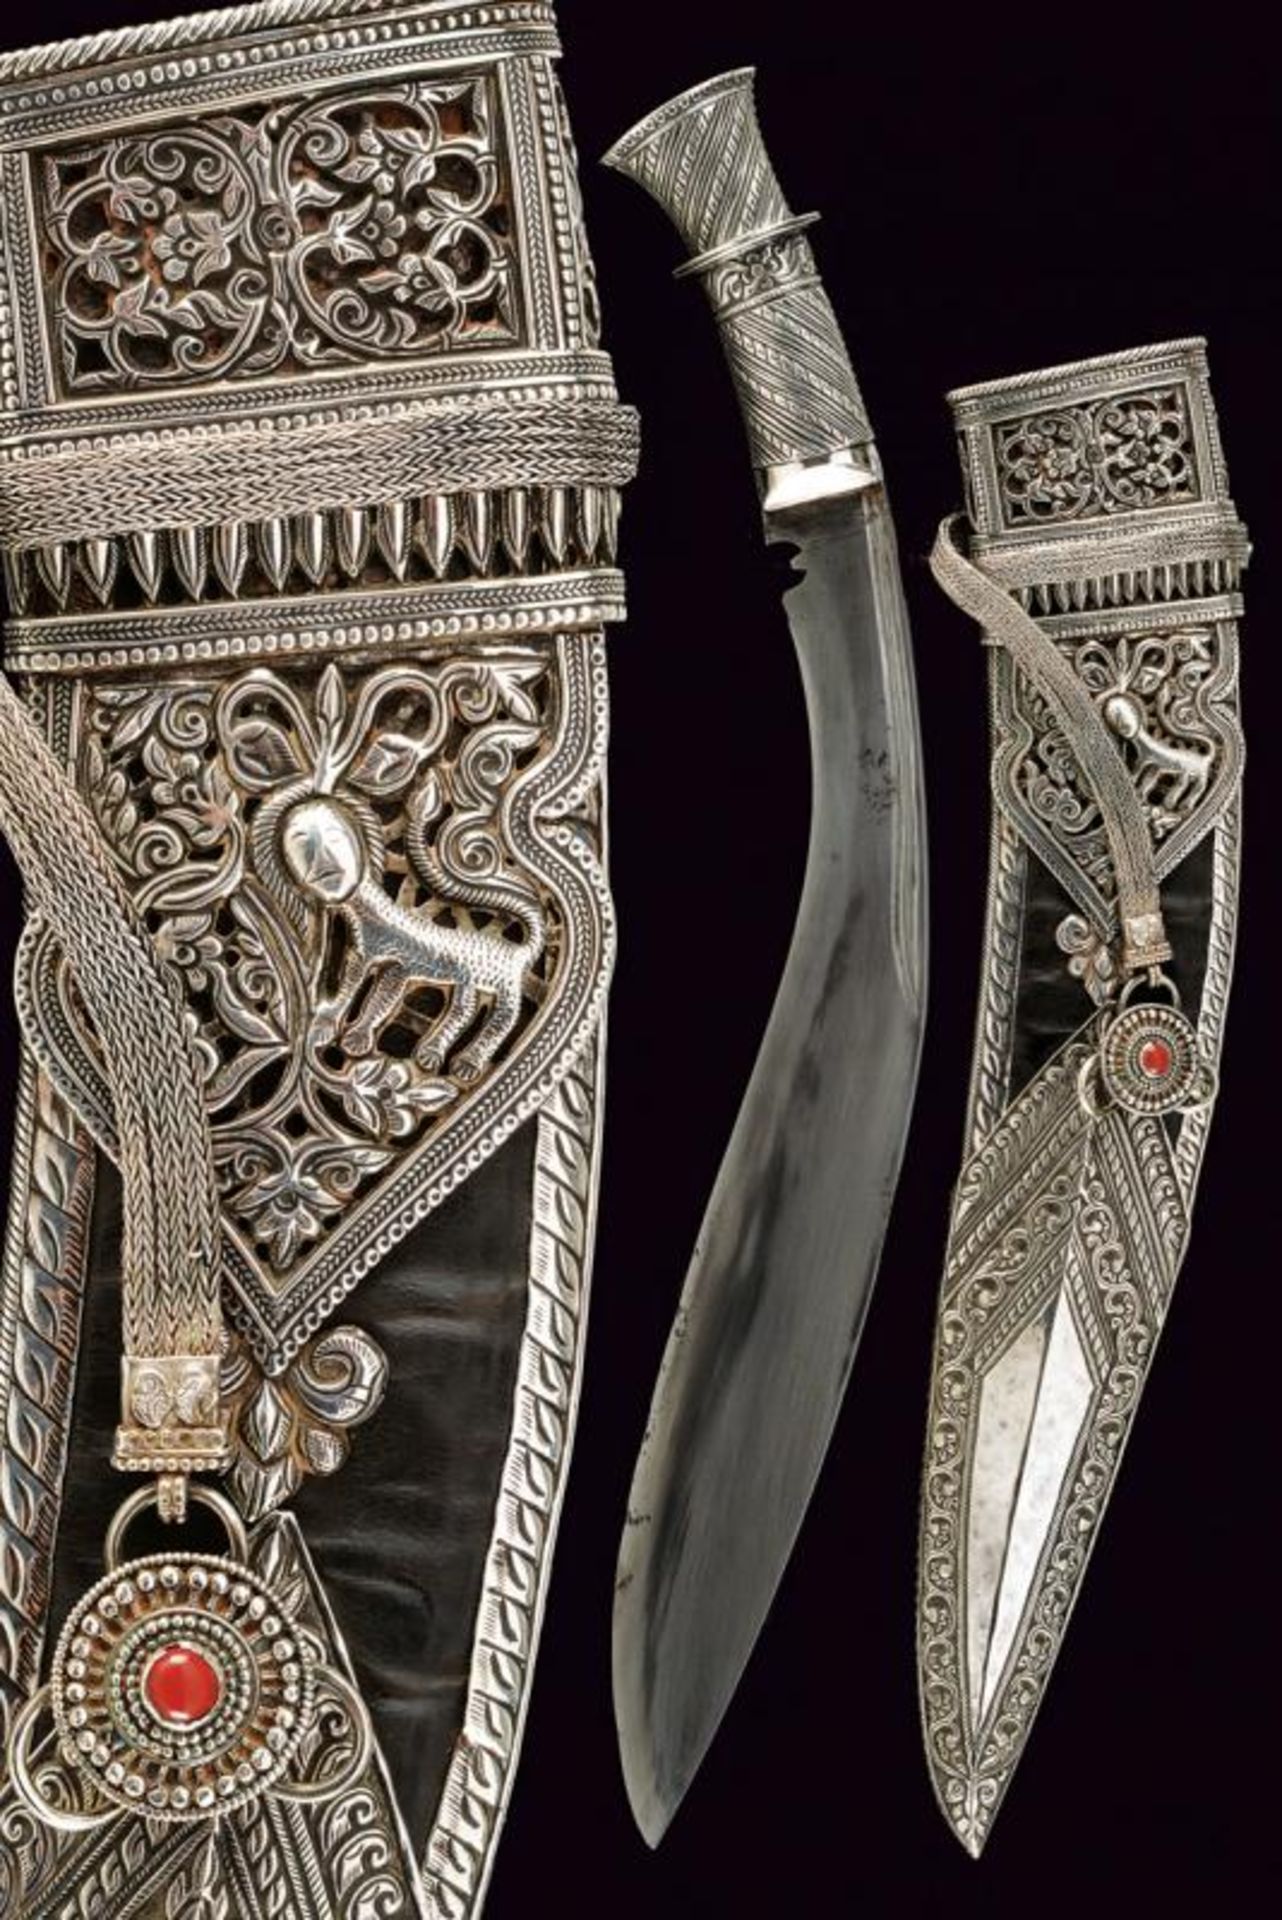 A beautiful silver mounted kukri with belt